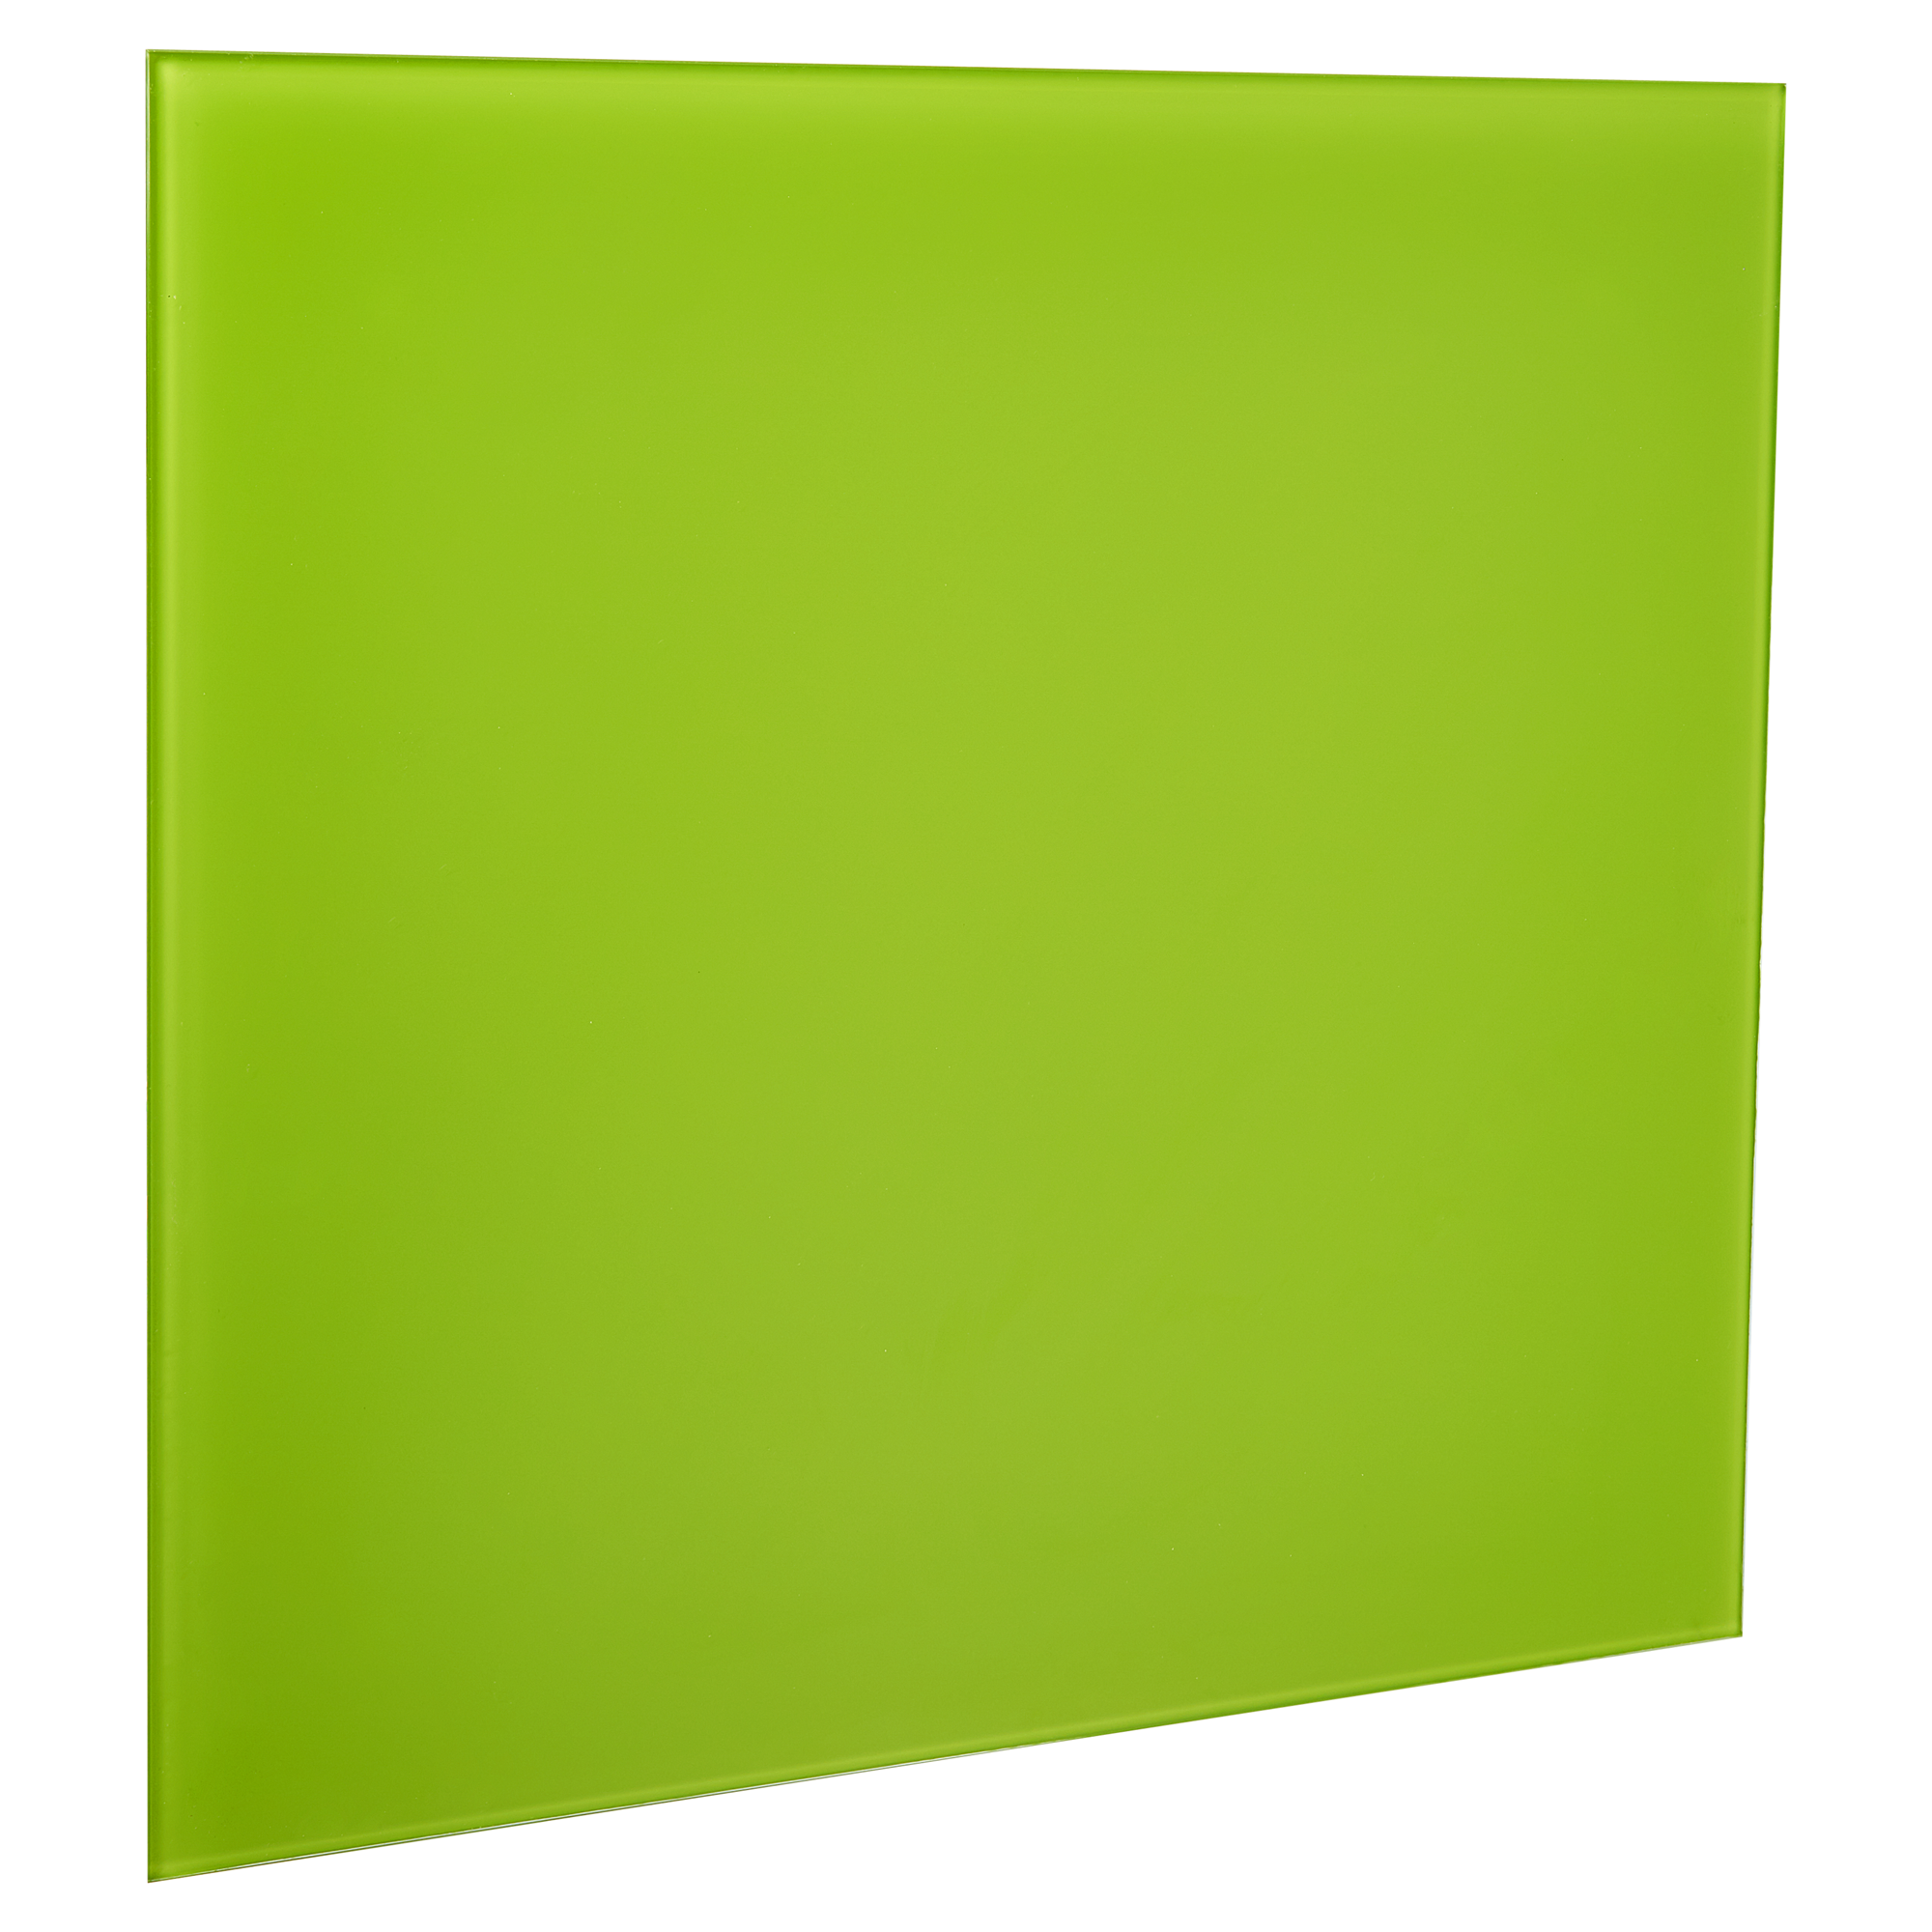 Memoboard beschreibbar grün 50 x 50 cm + product picture